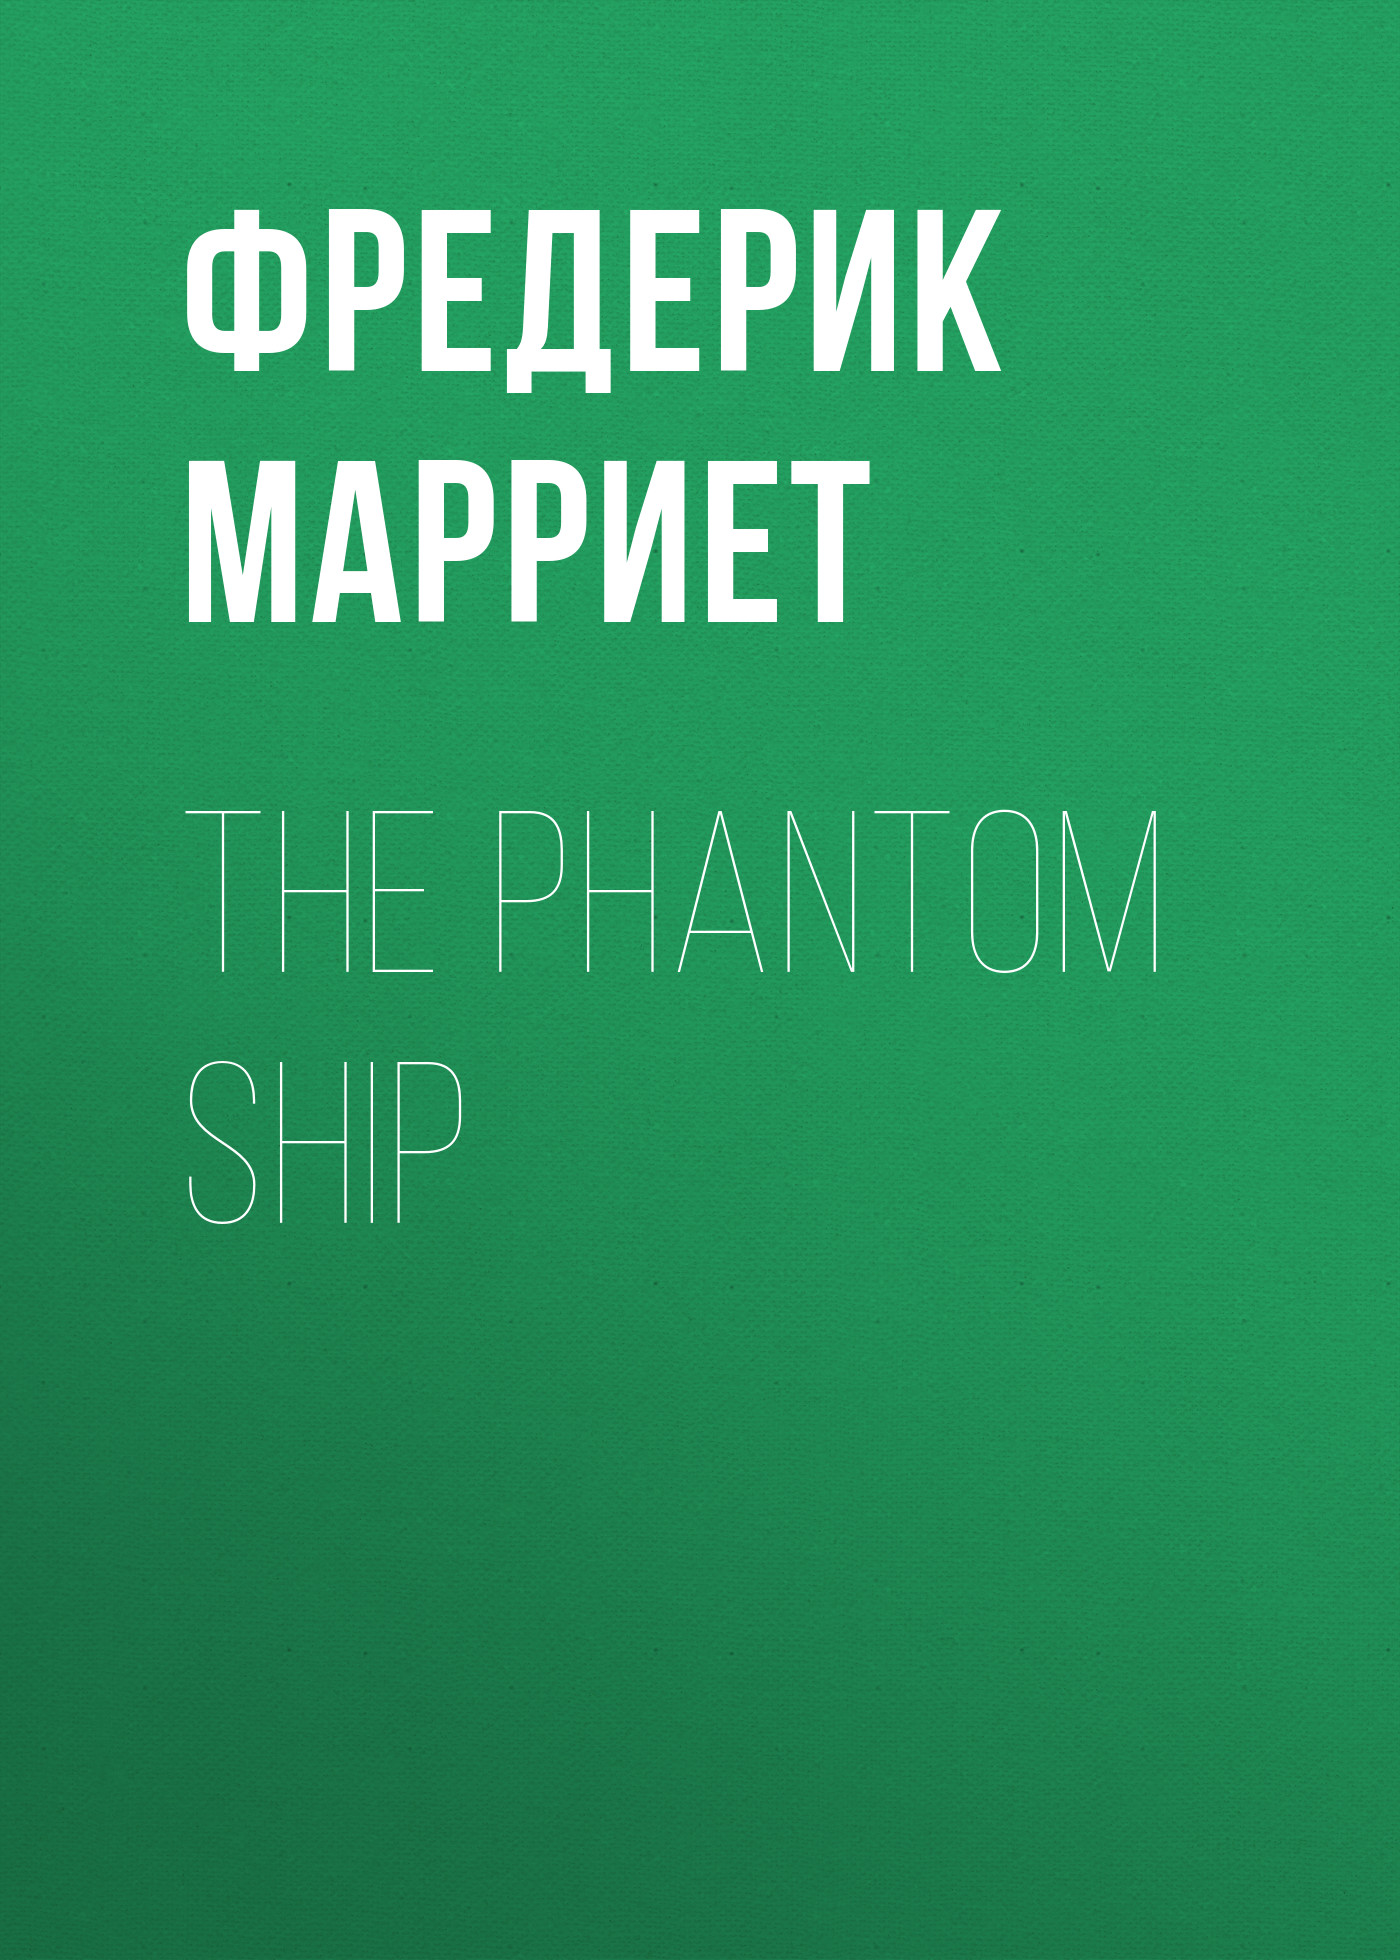 Книга The Phantom Ship из серии , созданная Фредерик Марриет, может относится к жанру Зарубежная классика, Литература 19 века, Зарубежная старинная литература. Стоимость электронной книги The Phantom Ship с идентификатором 38306809 составляет 0 руб.